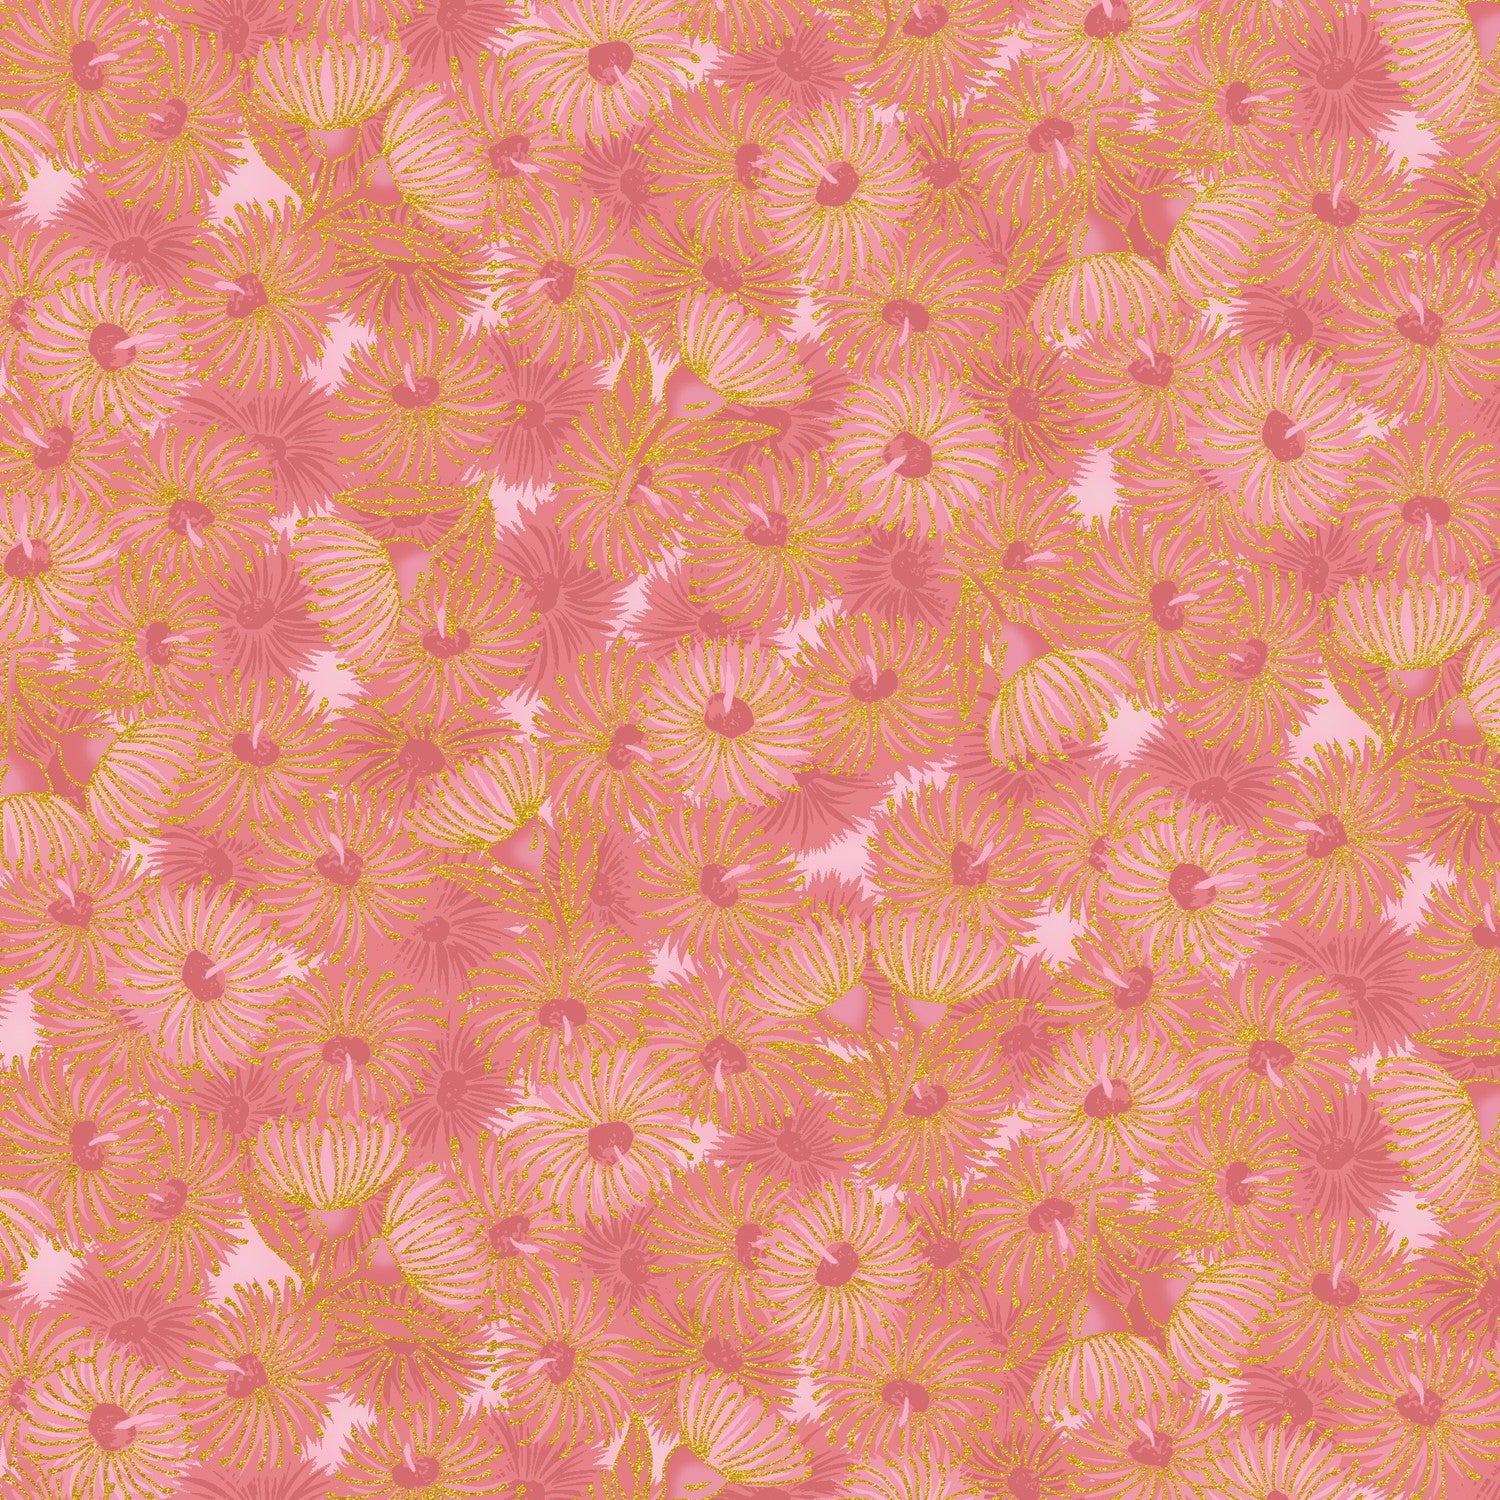 UTAS - Flowering Gum - Pink (0012-26)